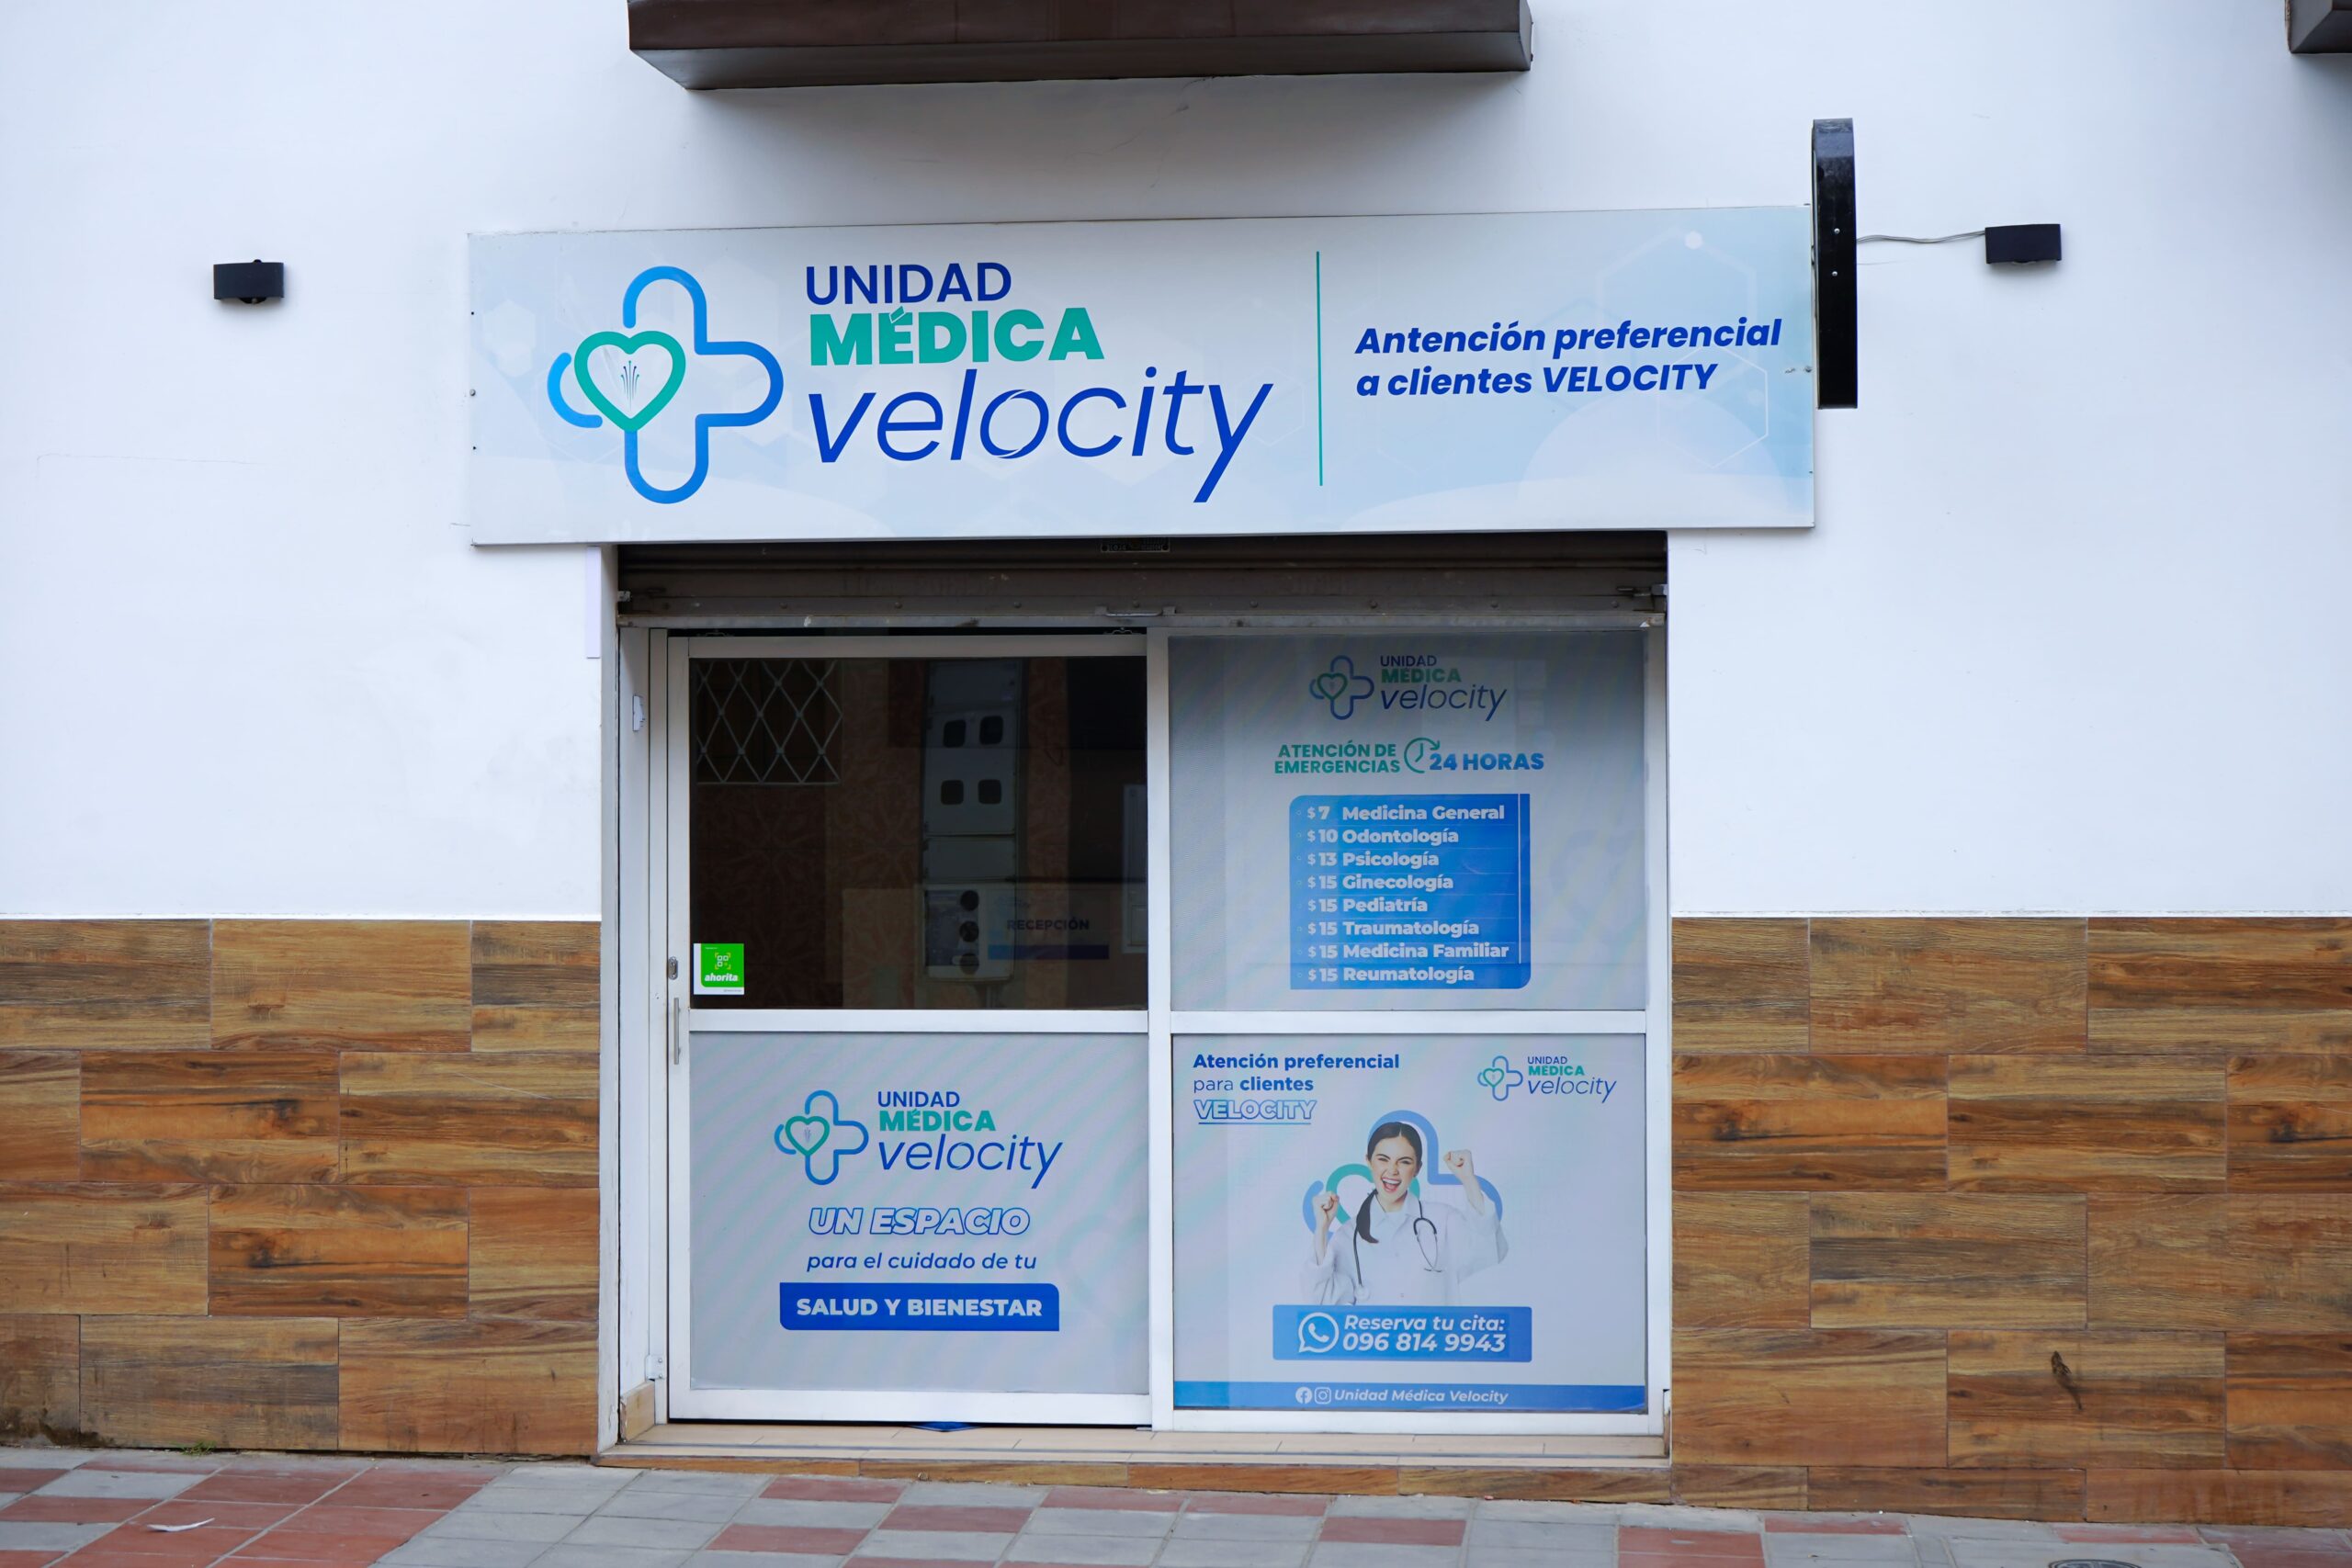 ATENCIÓN. Velocity pone a disposición de la ciudadanía su Unidad Médica, con servicios de alta calidad.